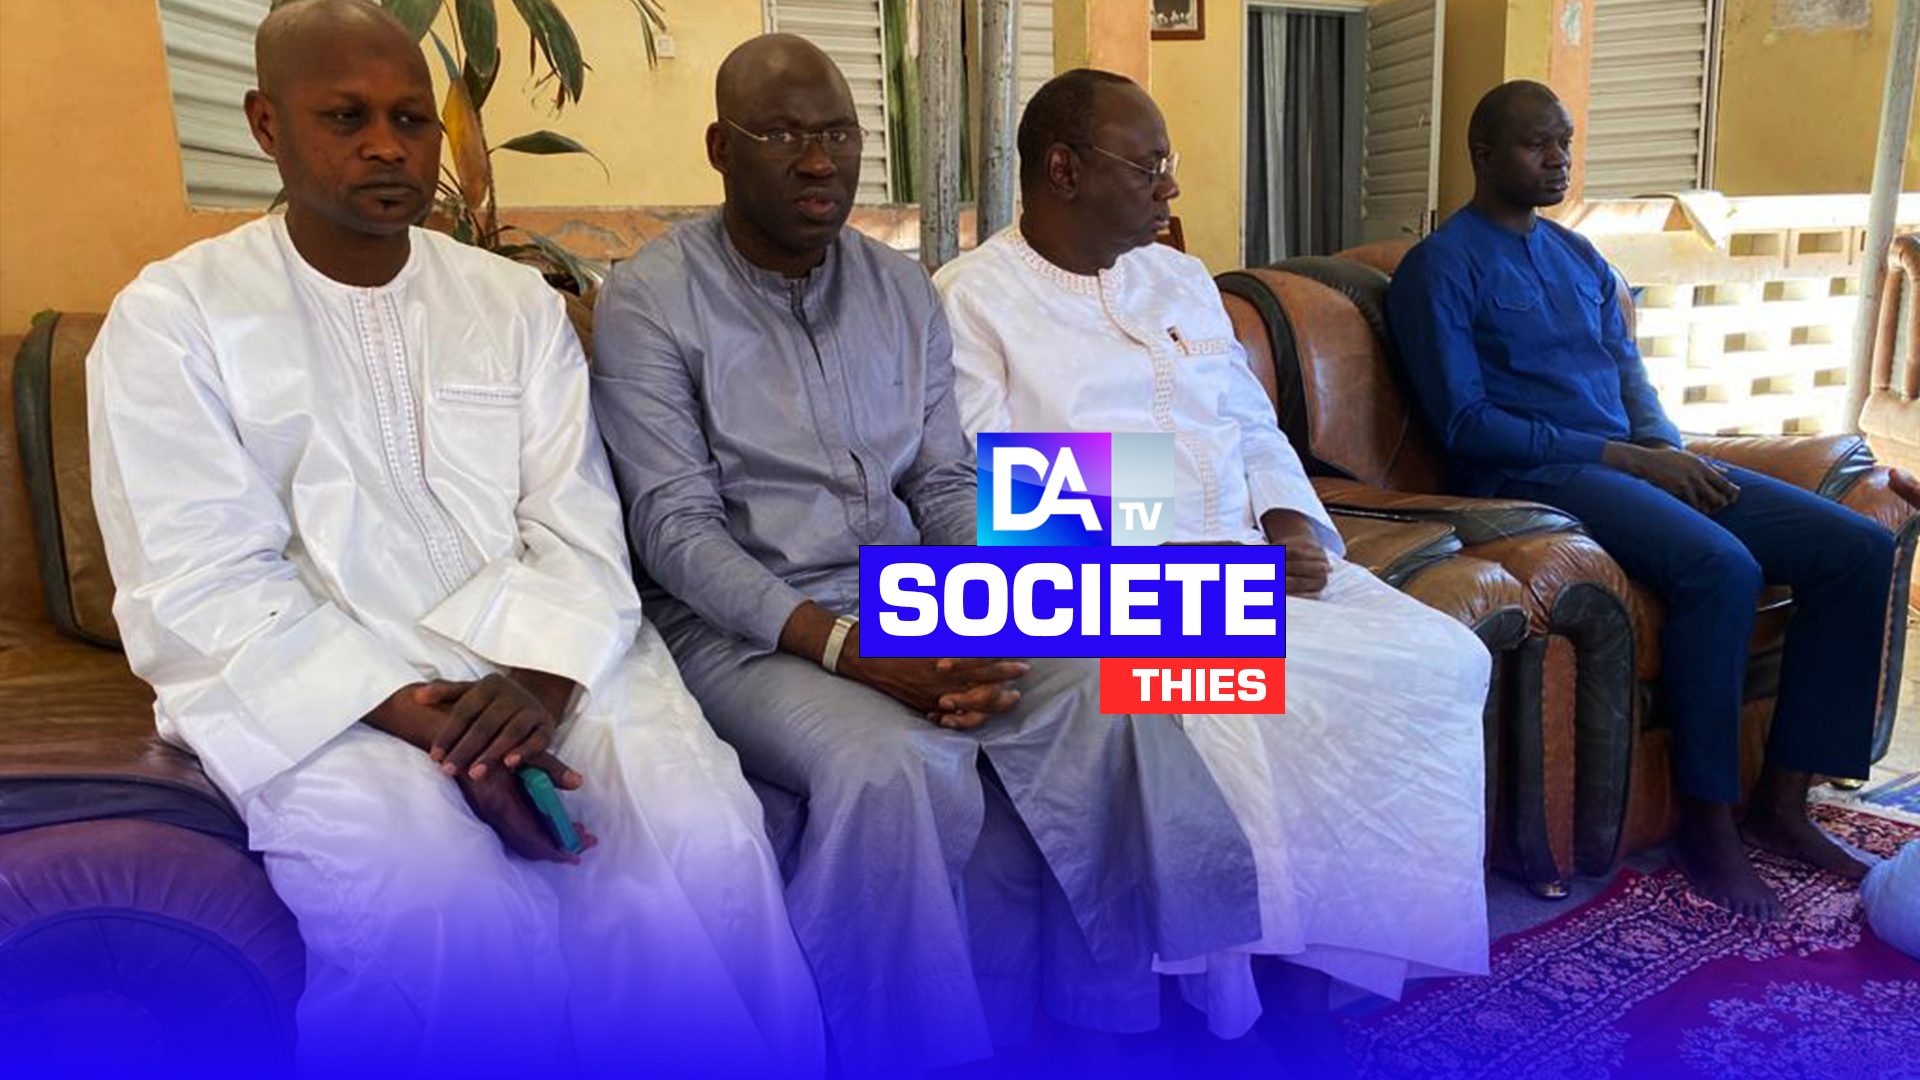 Recevant une délégation de l’AMS venue lui présenter ses condoléances, le Maire de la ville de Thiès, Monsieur Babacar Diop, réaffirme son ancrage dans ladite association